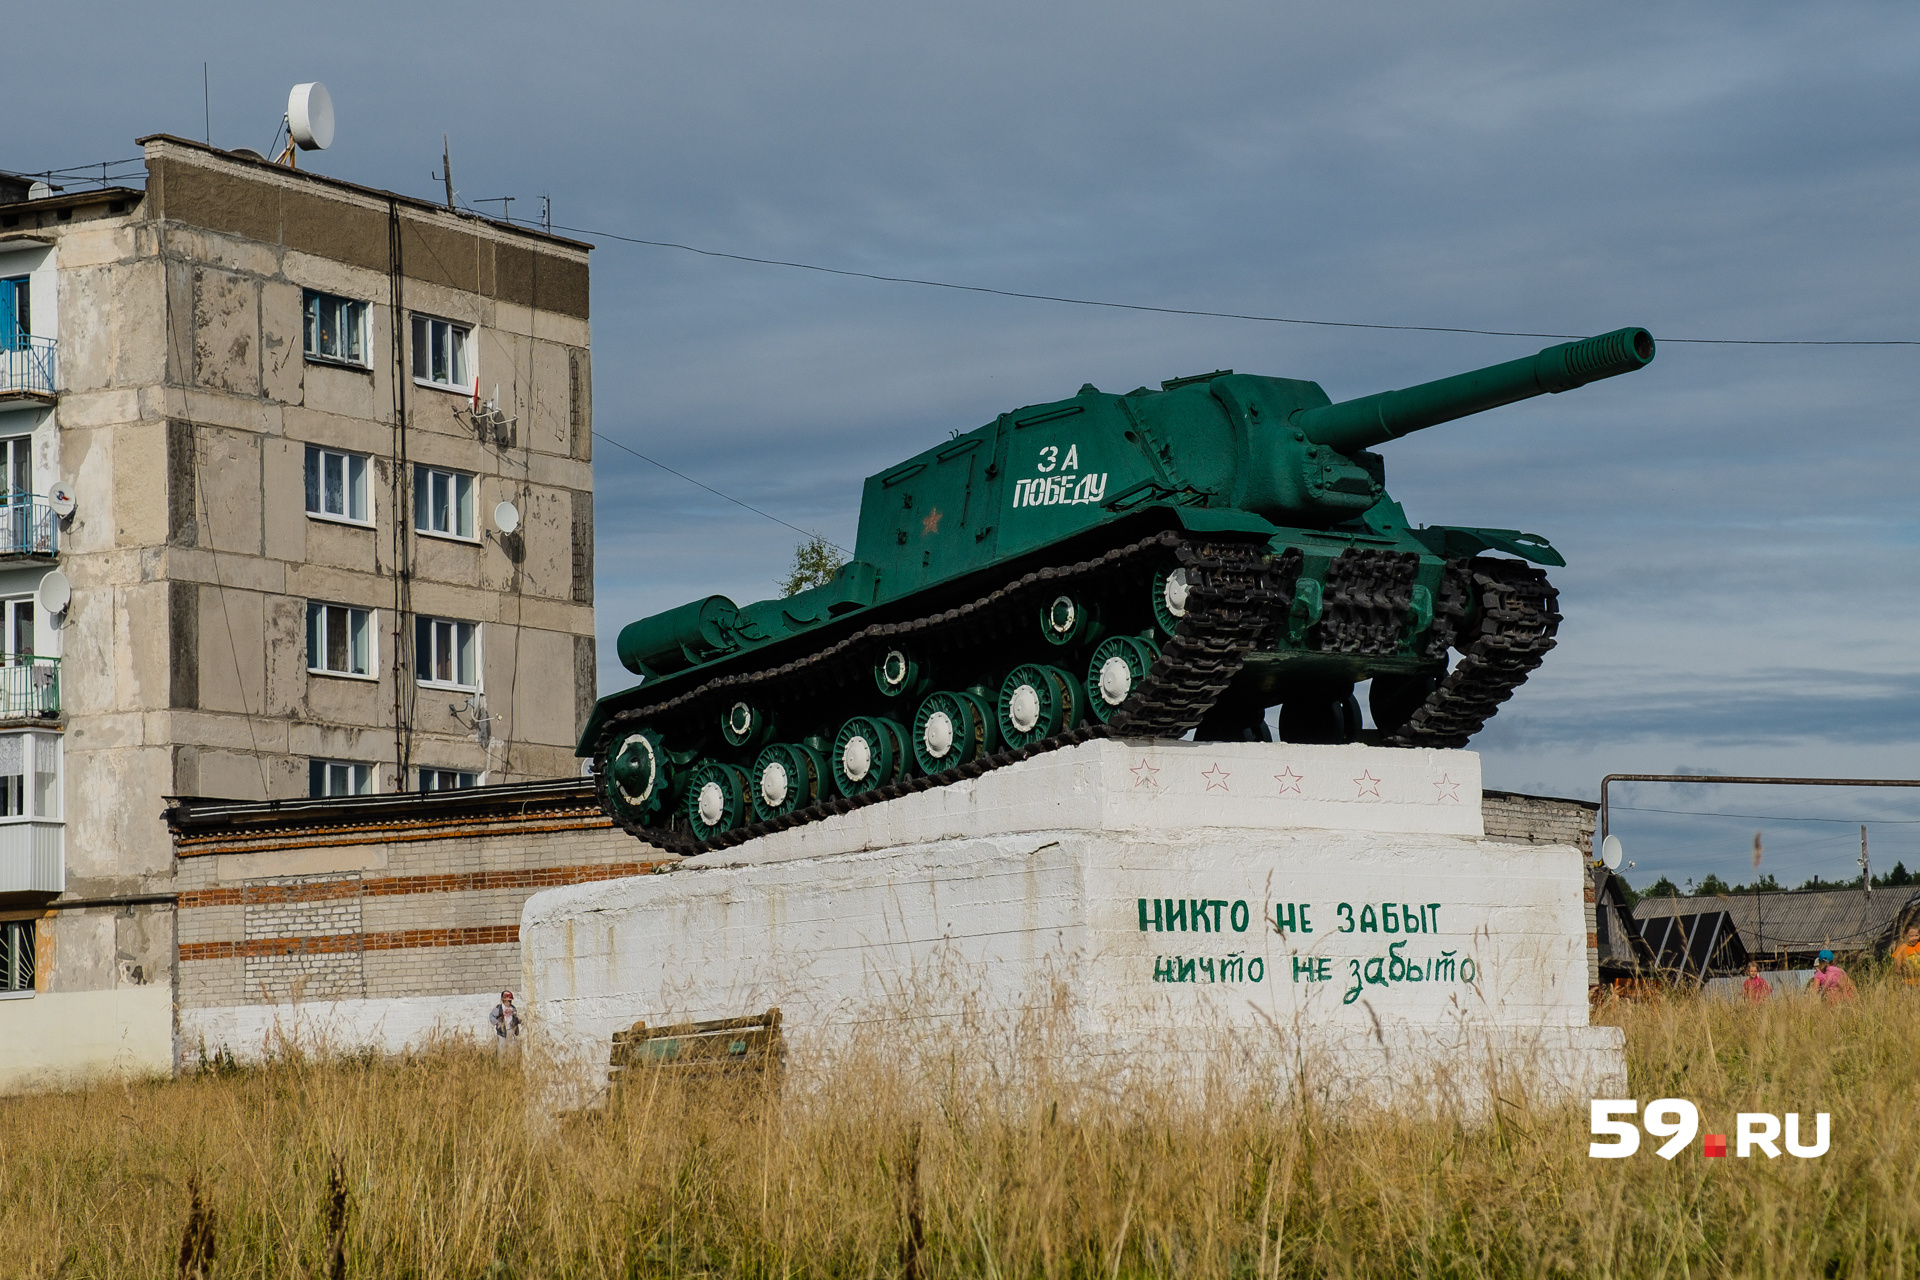 Возле разрушенных зданий — памятник, посвященный Великой Отечественной войне